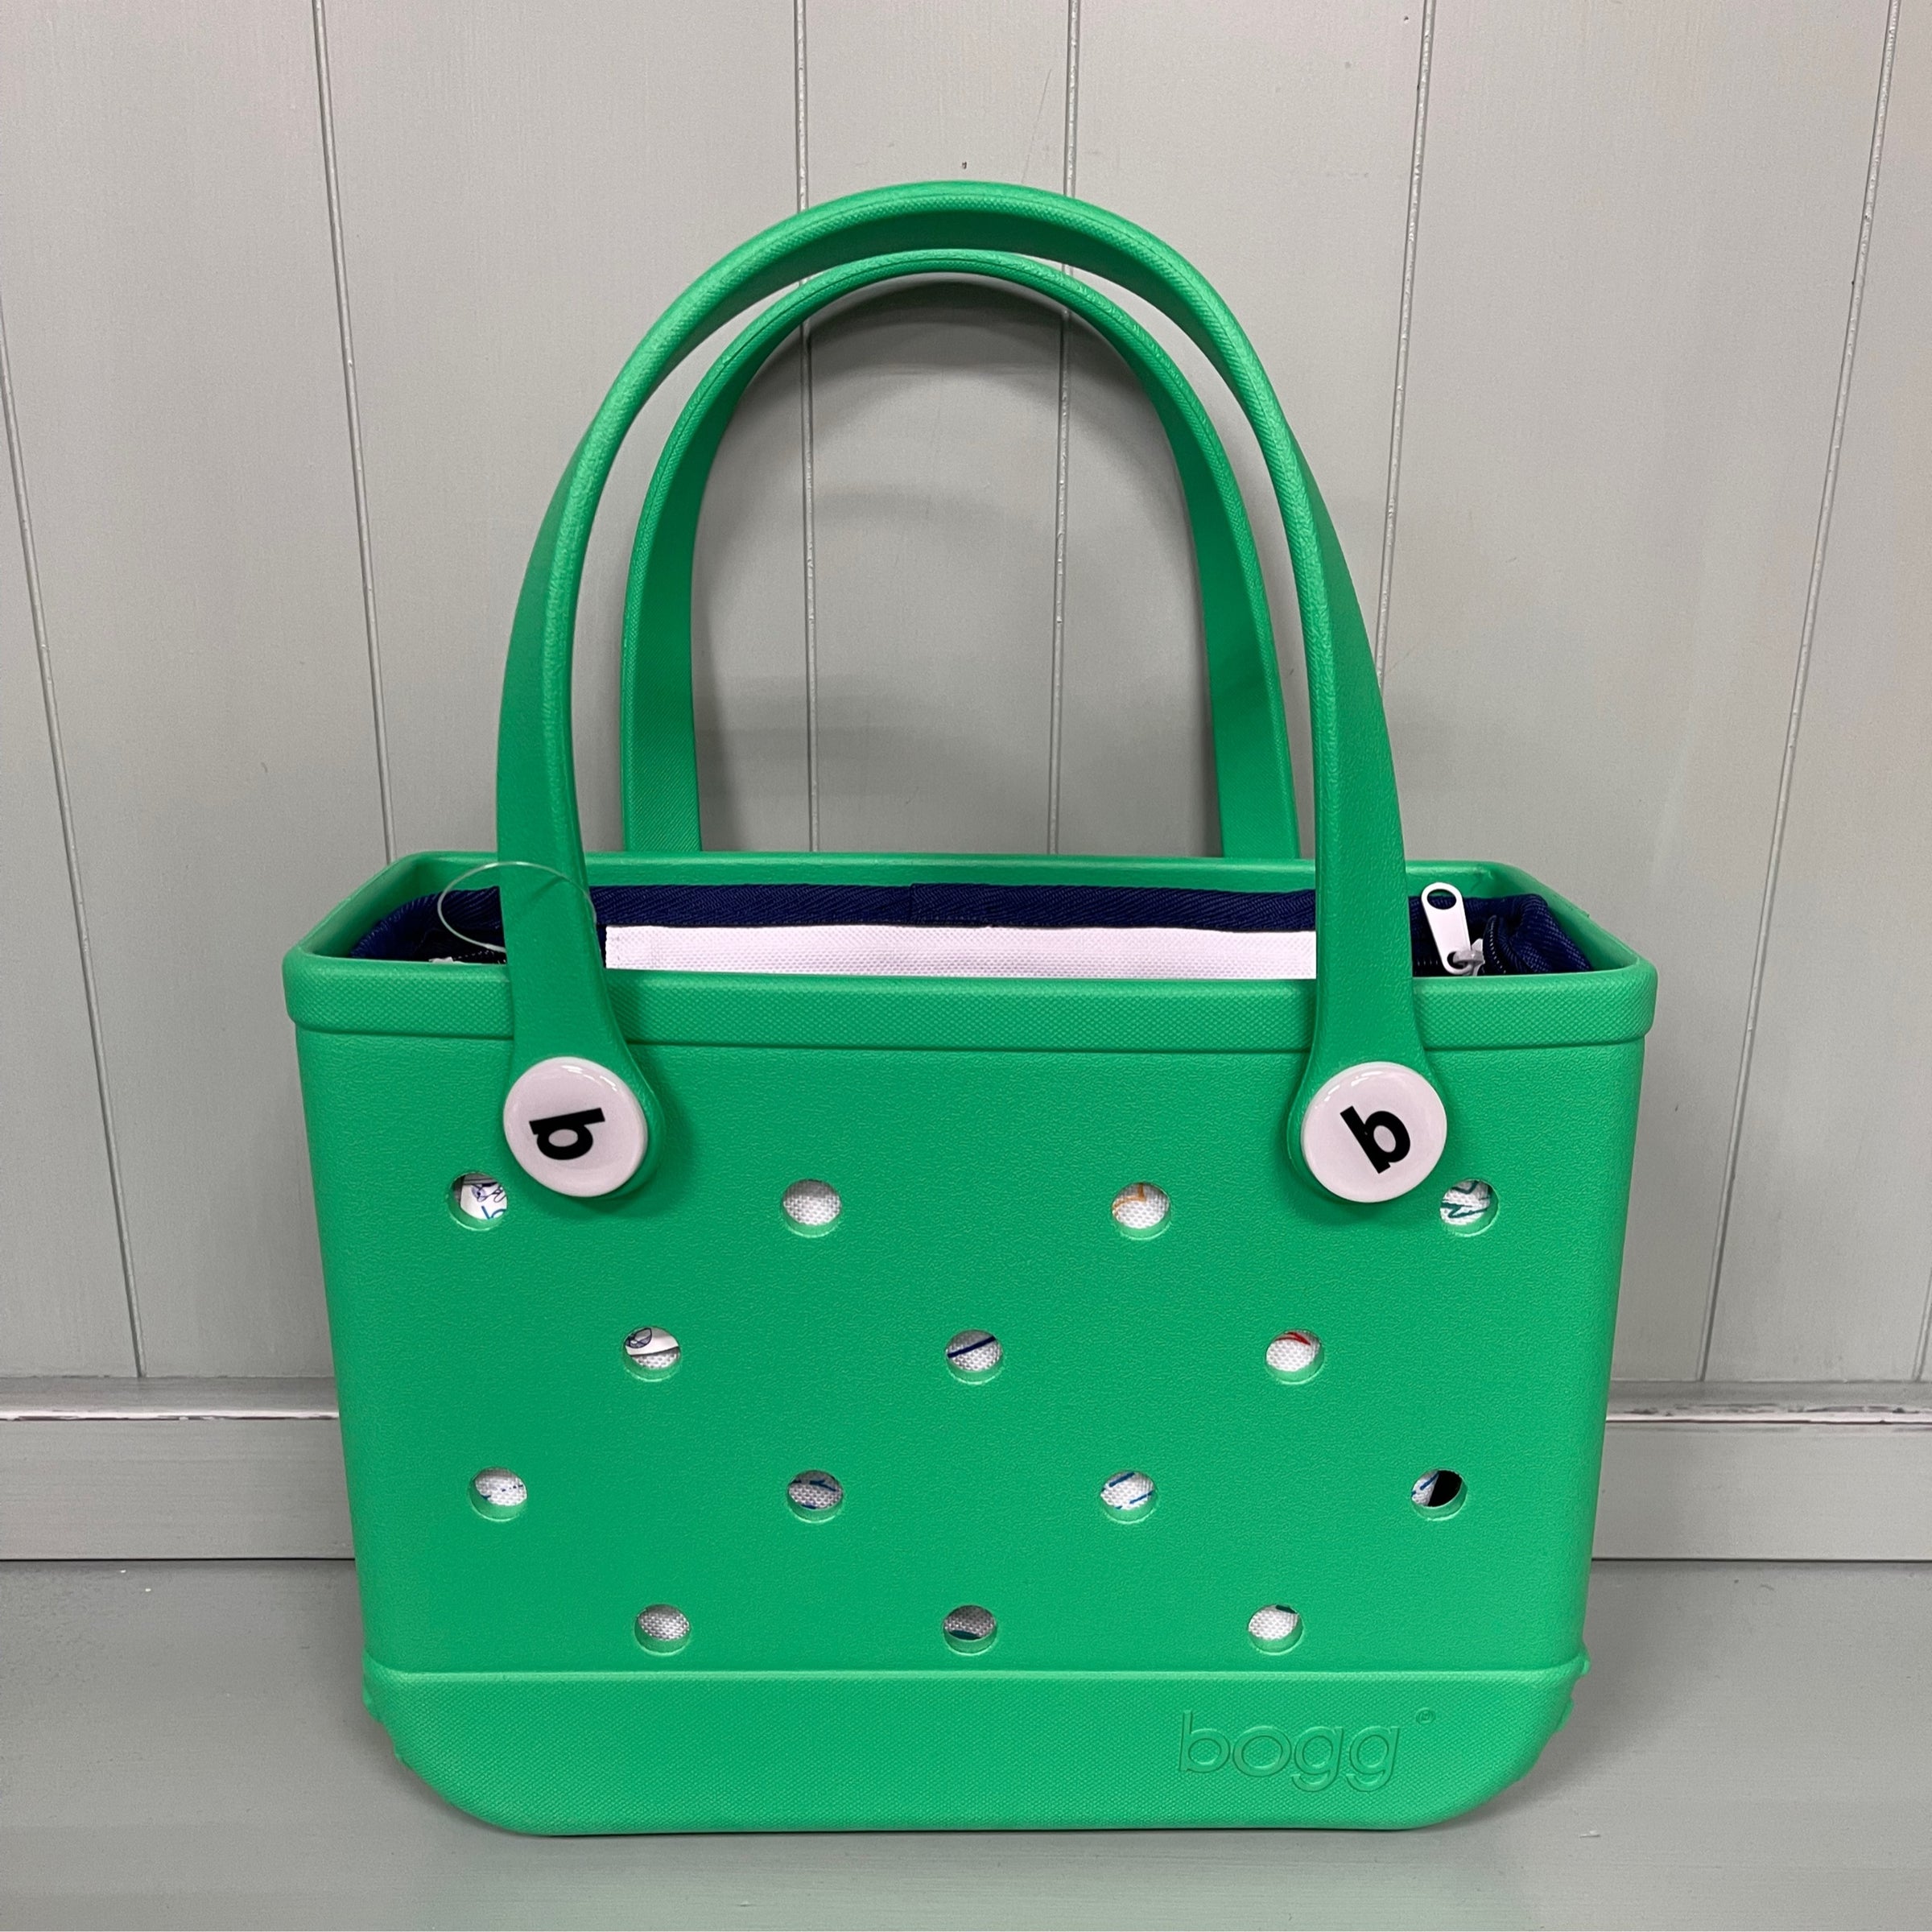 Bogg Bag, Green Envy Bitty Bogg Bag